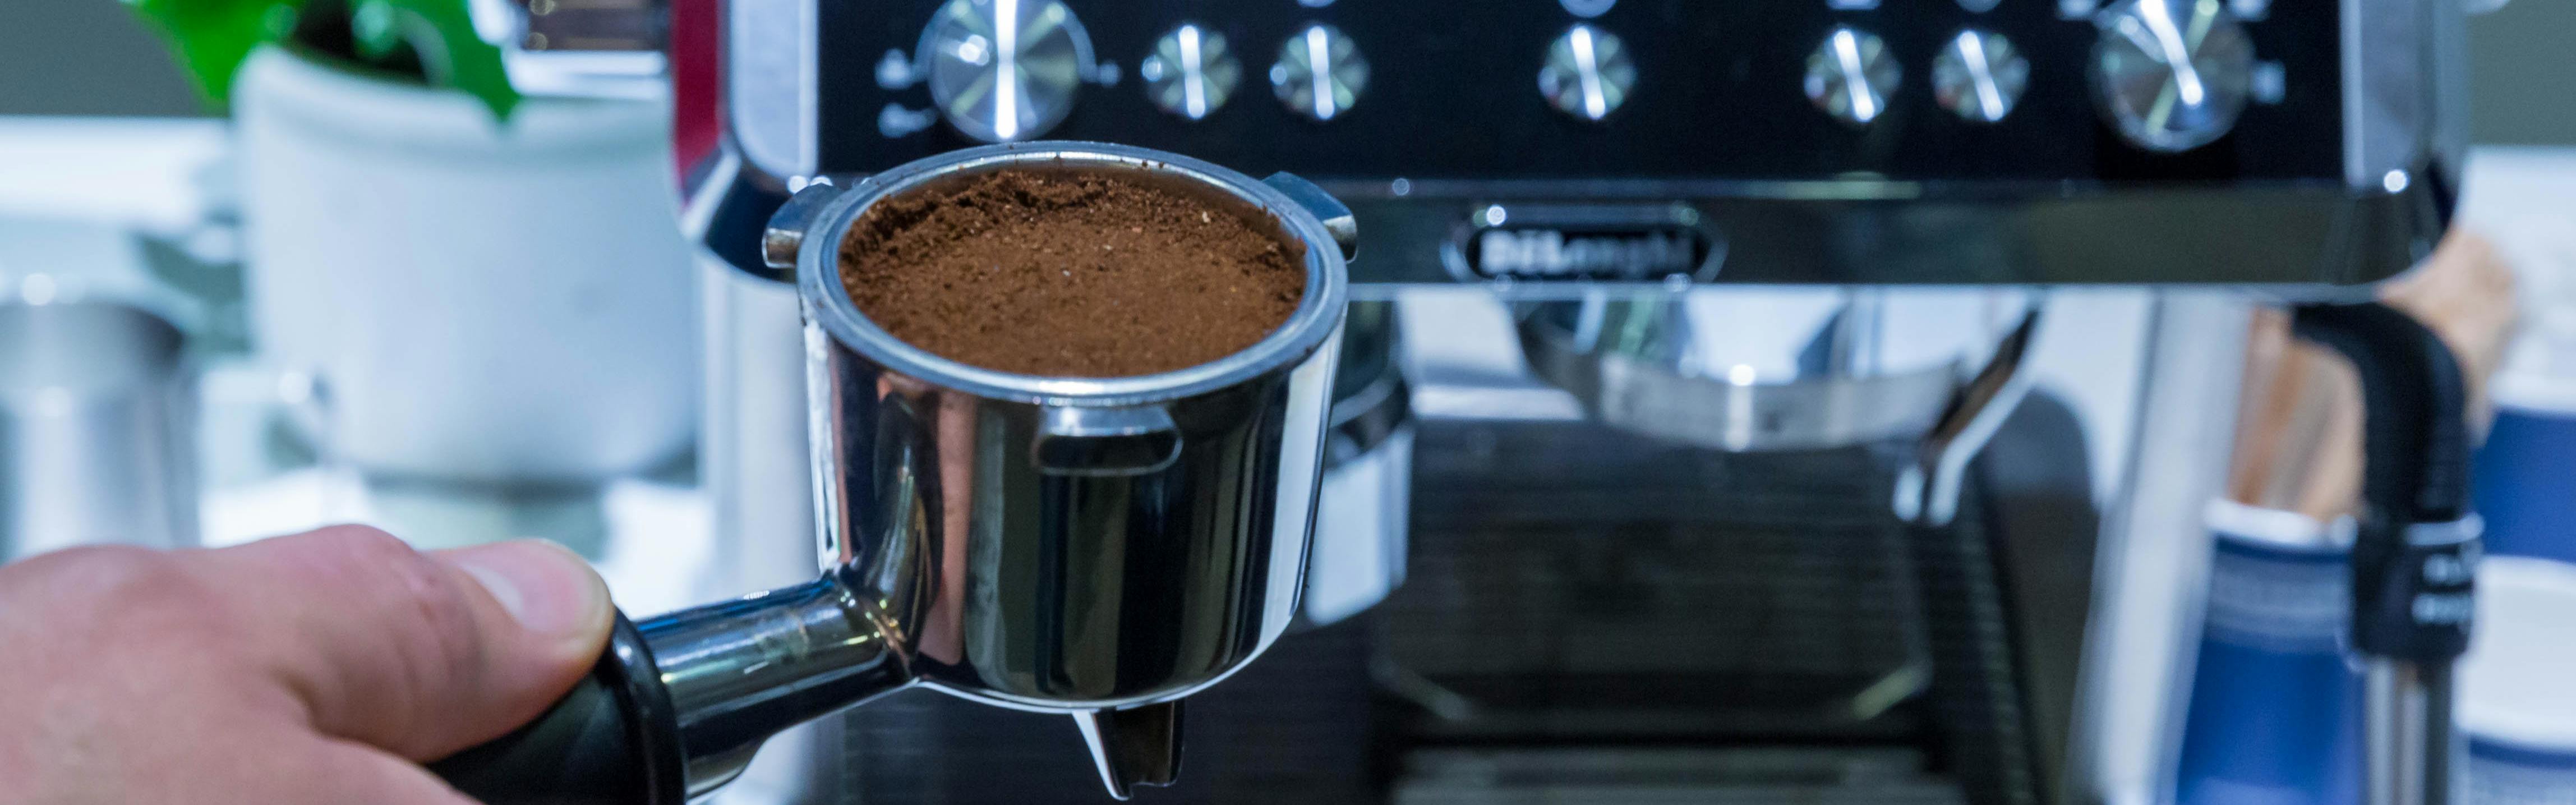 De'Longhi Stilosa review: Is this affordable espresso machine easy